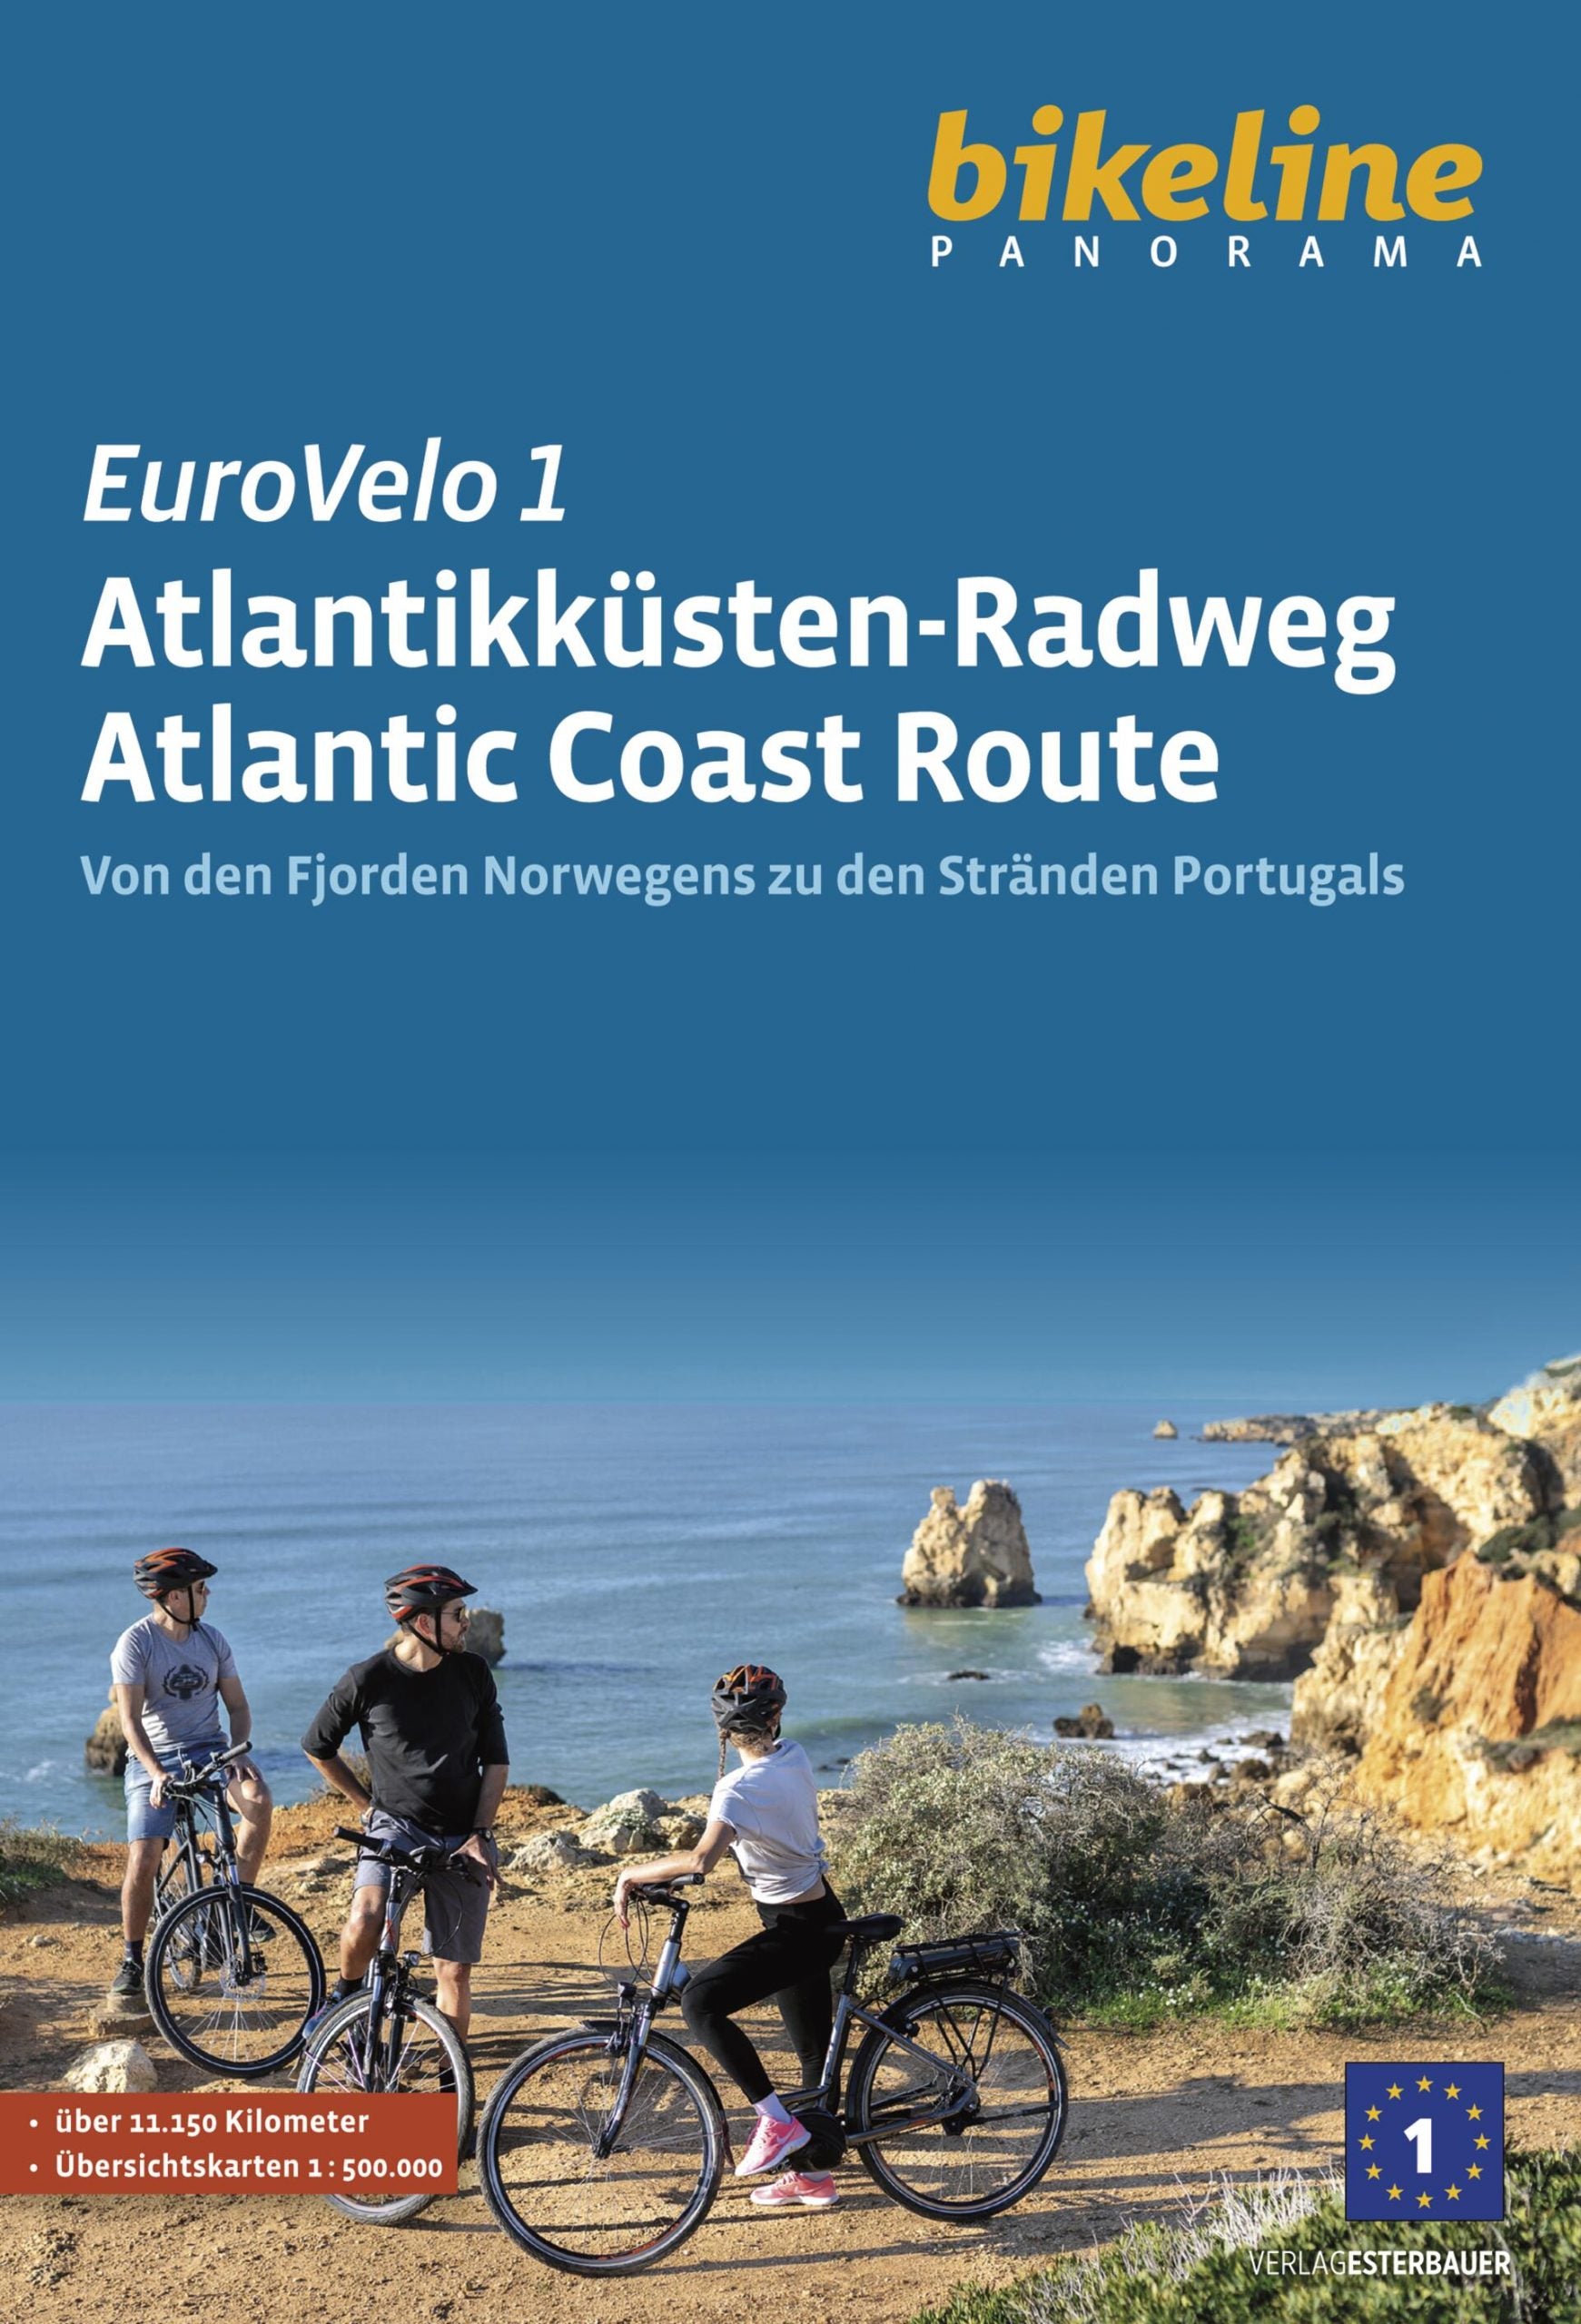 Eurovelo 1 Atlantikküsten-Radweg